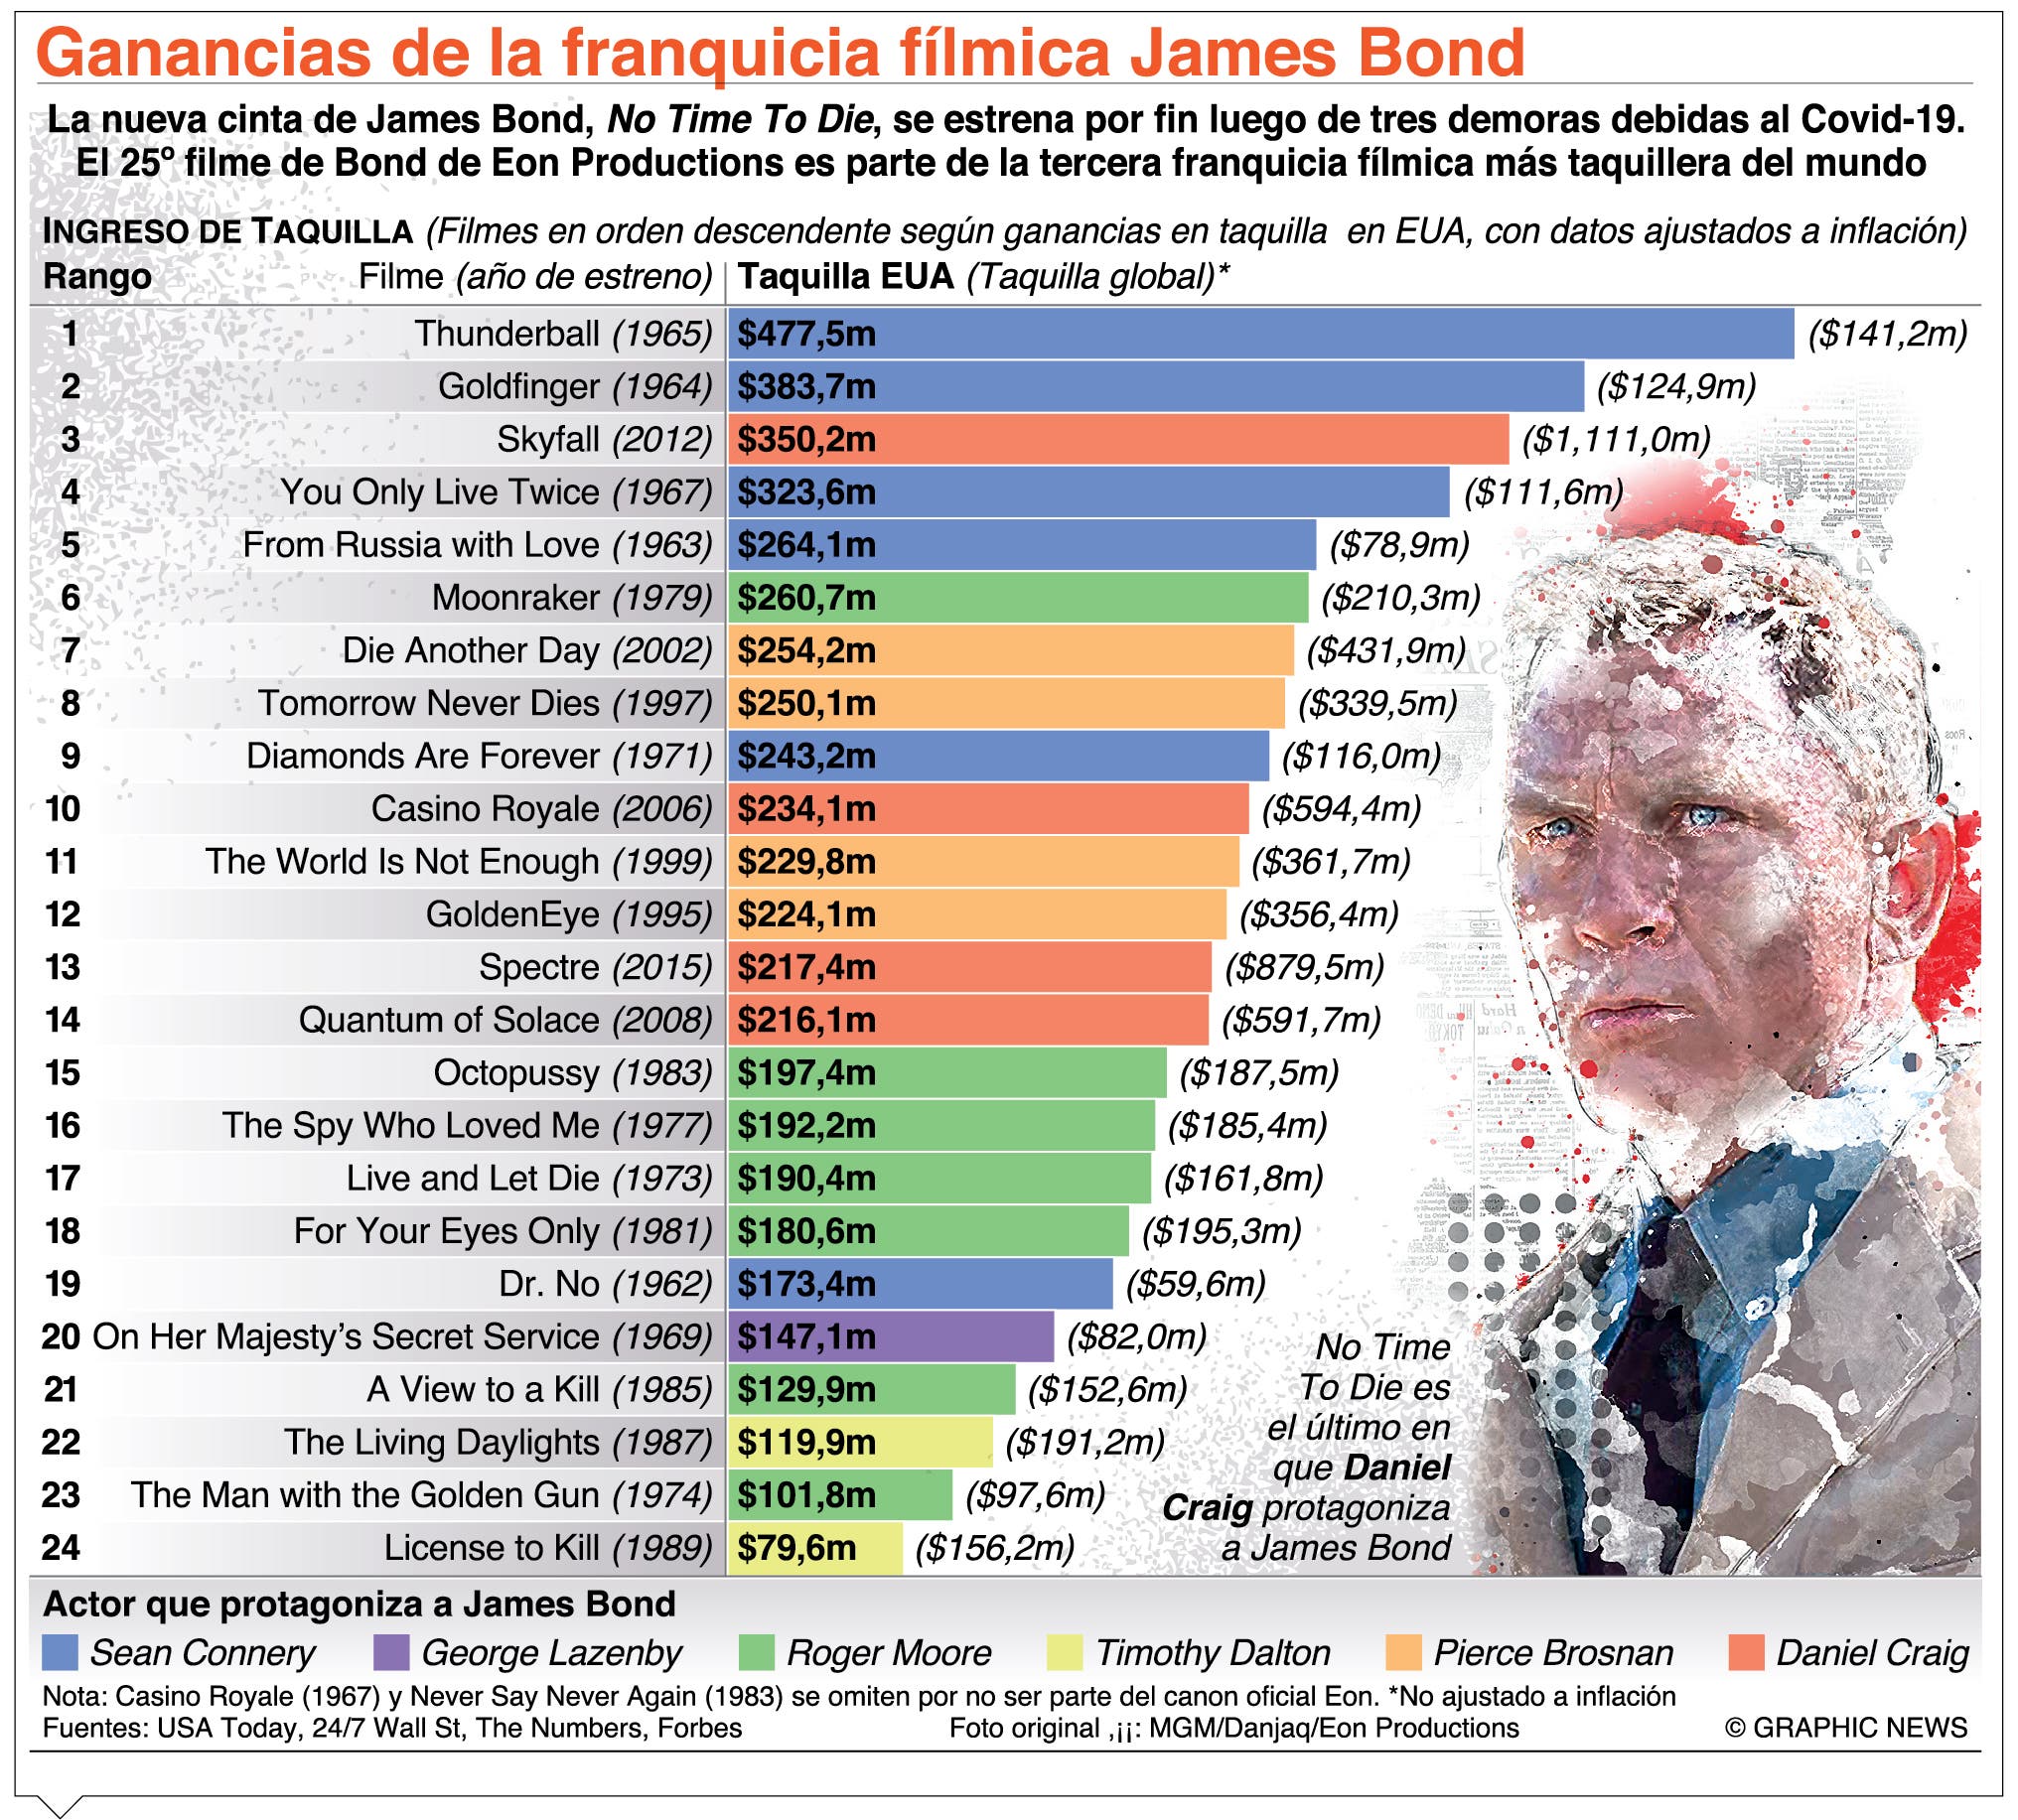 En 25 años una lista 6 actores han encarnado James Bond